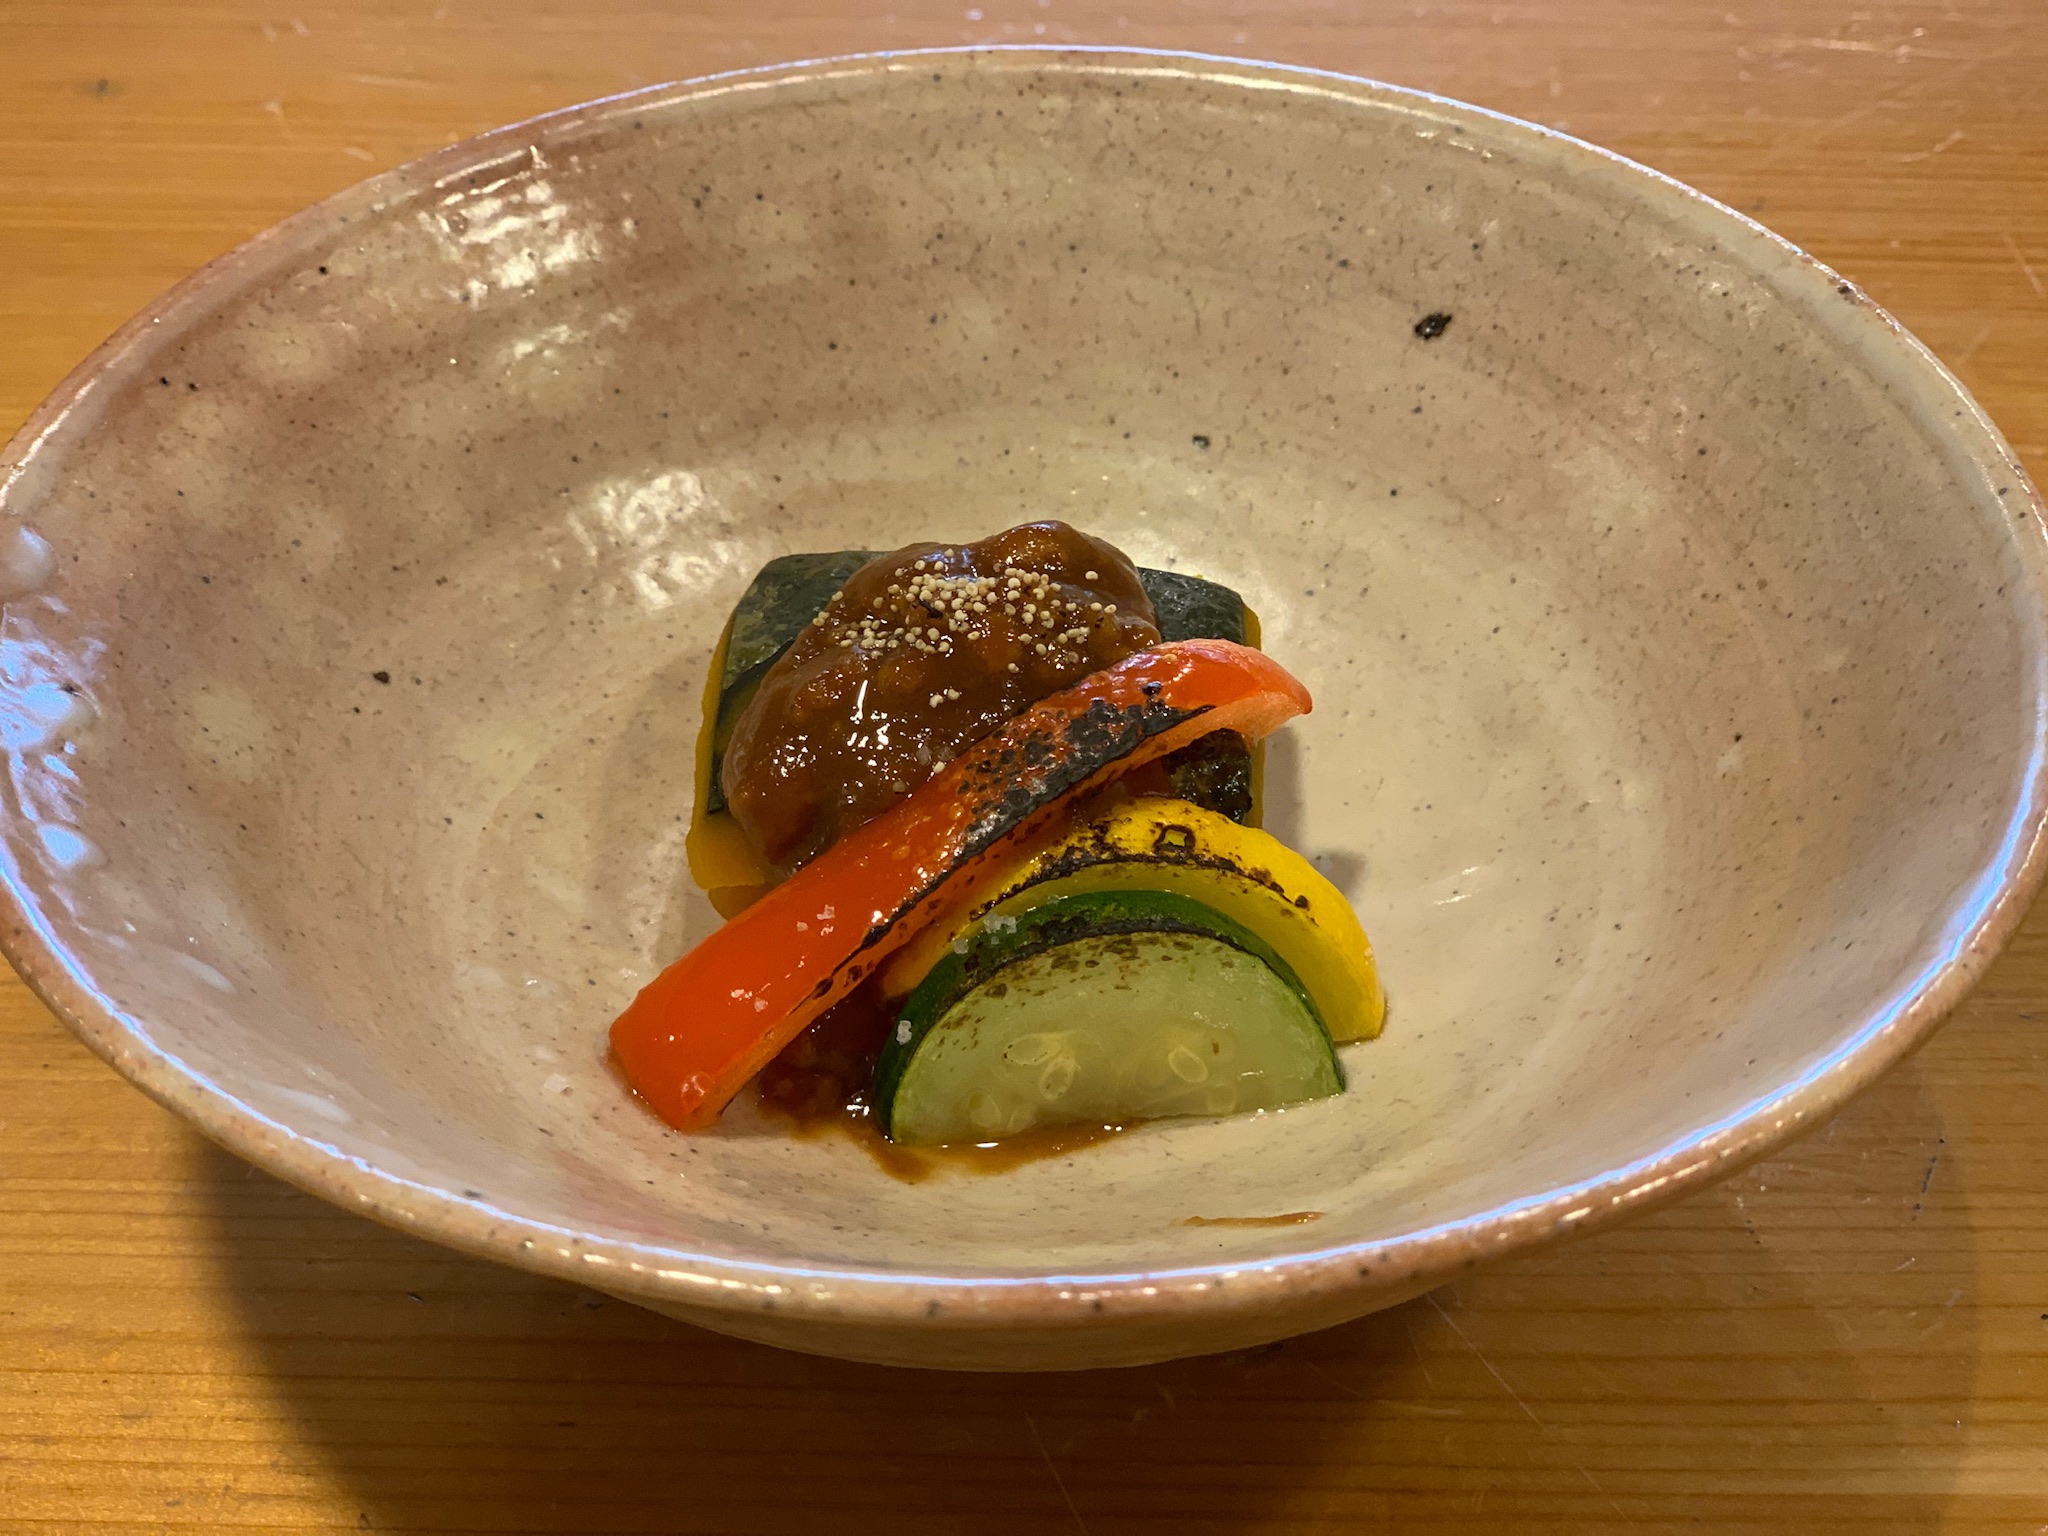 鎌倉八幡宮近くでランチ 七五三 夜ご飯も創作和料理近藤へ 鎌倉の創作和食 近藤 のブログ